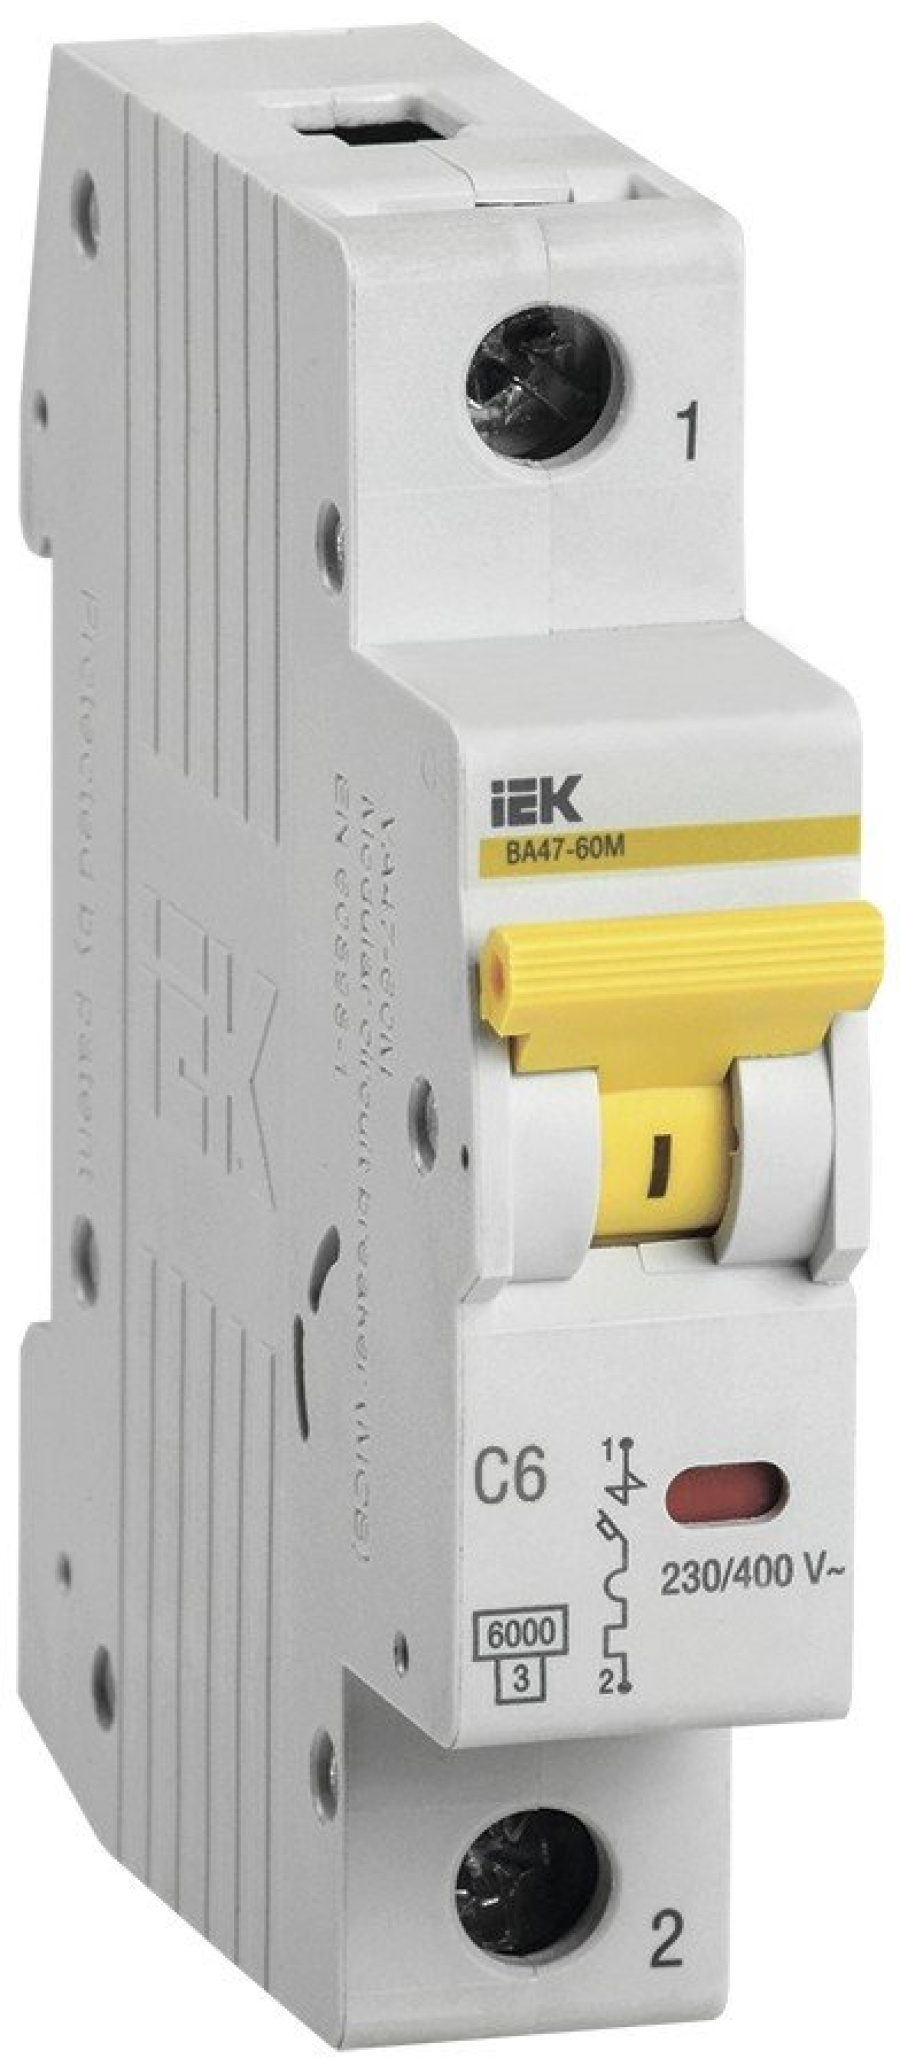 Выключатели автоматические iek ва47 29 1р 16а. Автоматический выключатель IEK ва47-29 2п,. Автоматический выключатель IEK 1п 20а. Ba47-29 IEK c40. Mva20-1-016-c IEK.